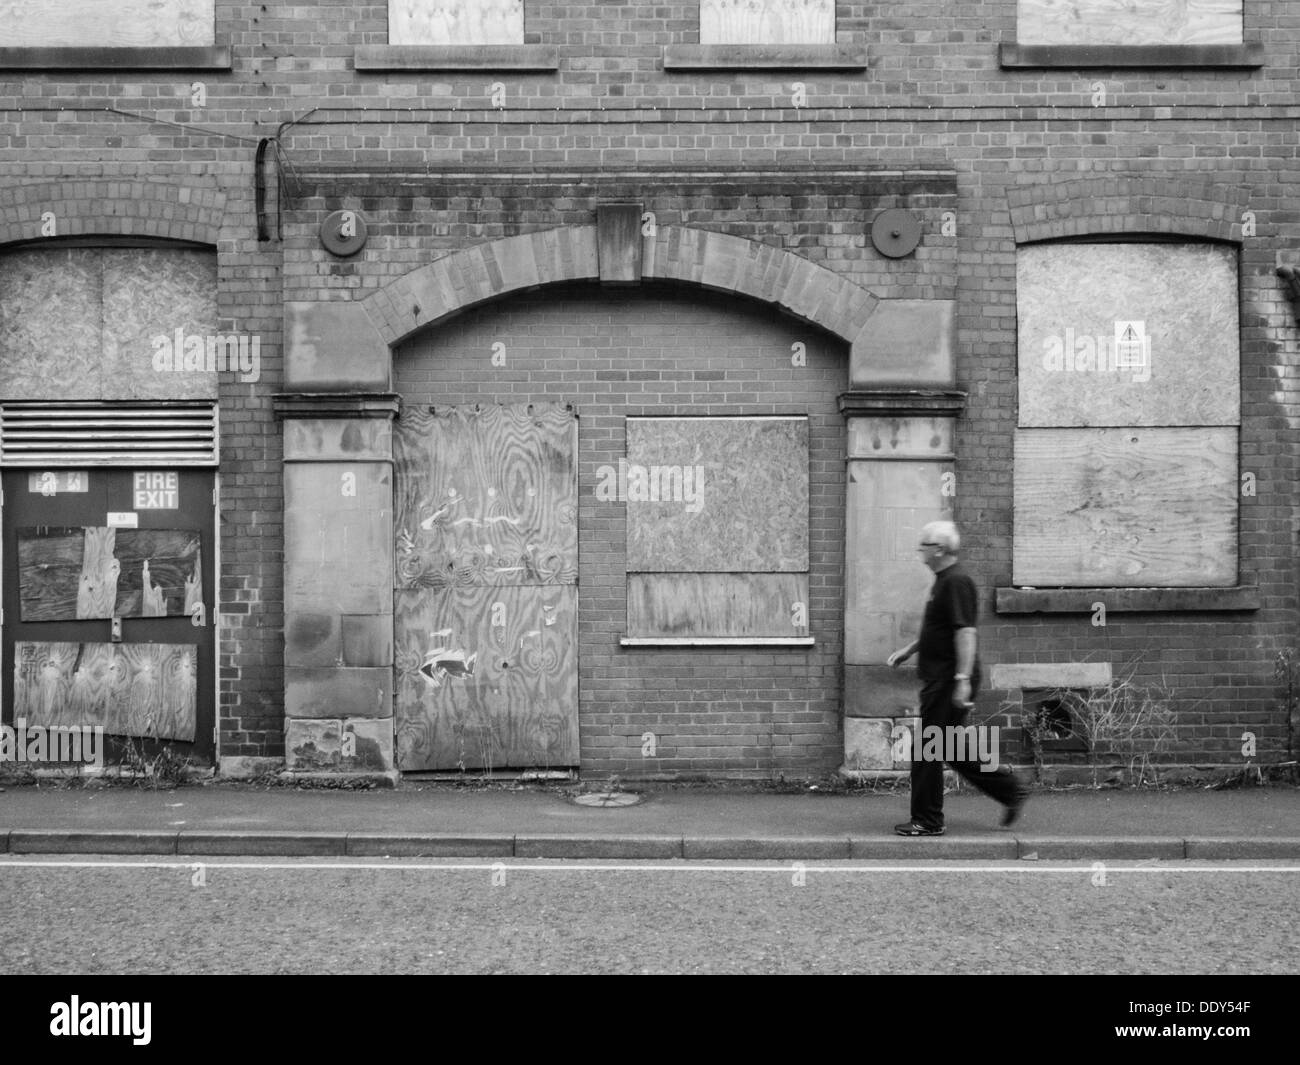 Homme marchant à travers l'armature devant une vieille usine abandonnée et abandonnés avec barricadèrent windows. Banque D'Images